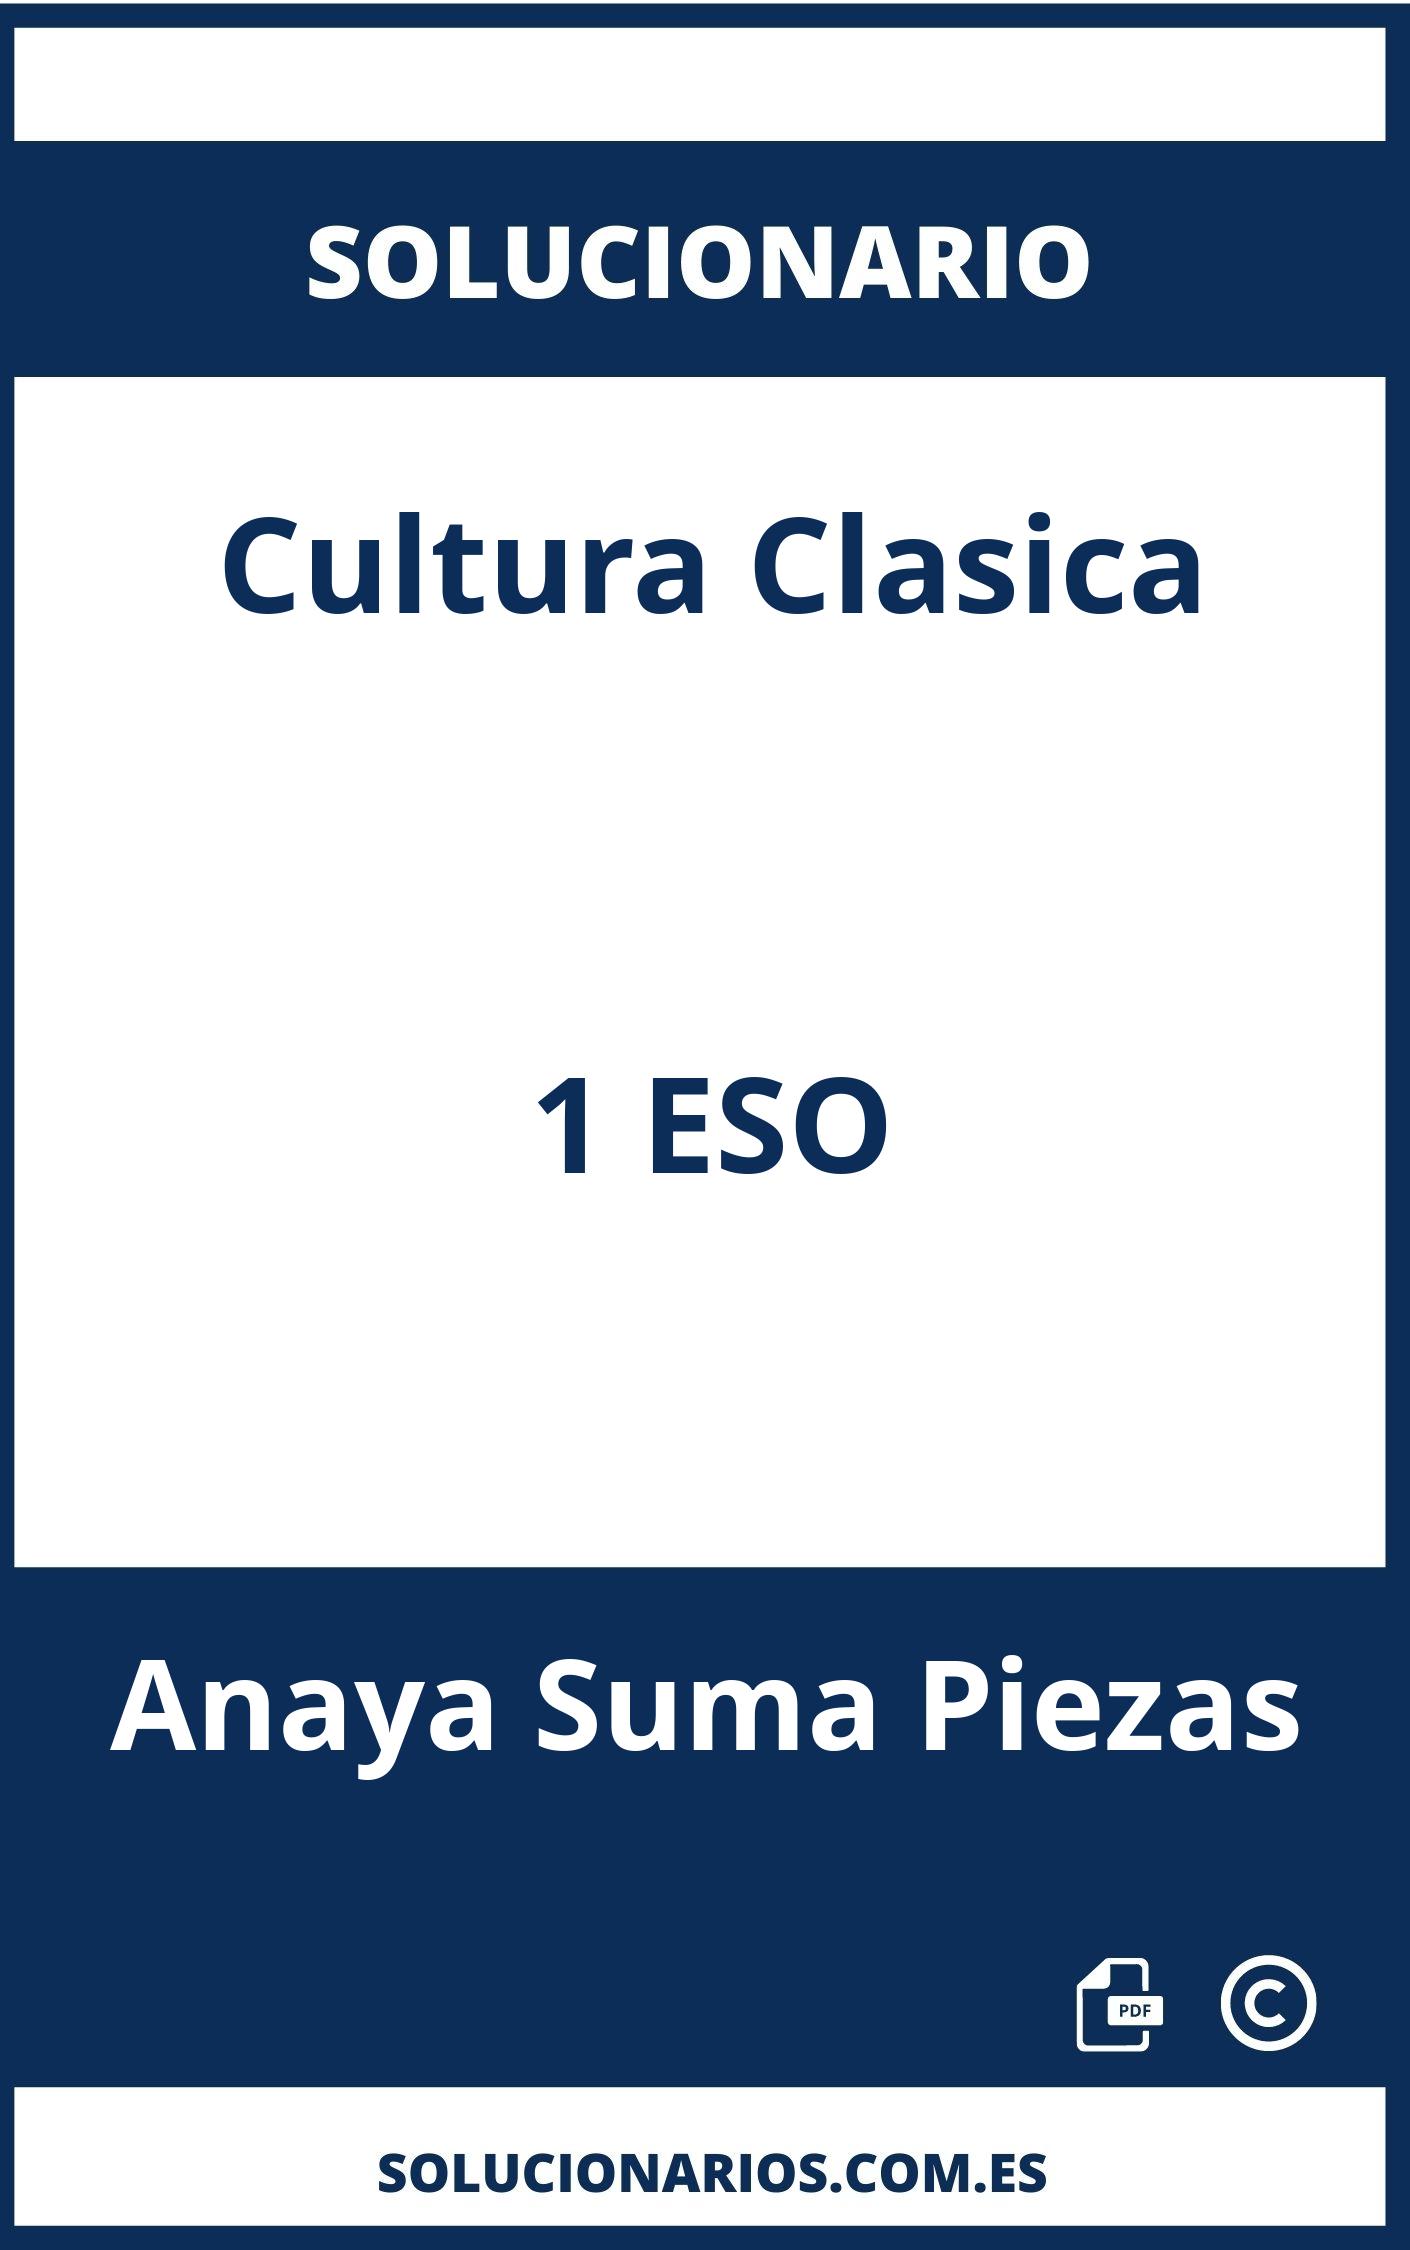 Solucionario Cultura Clasica 1 ESO Anaya Suma Piezas